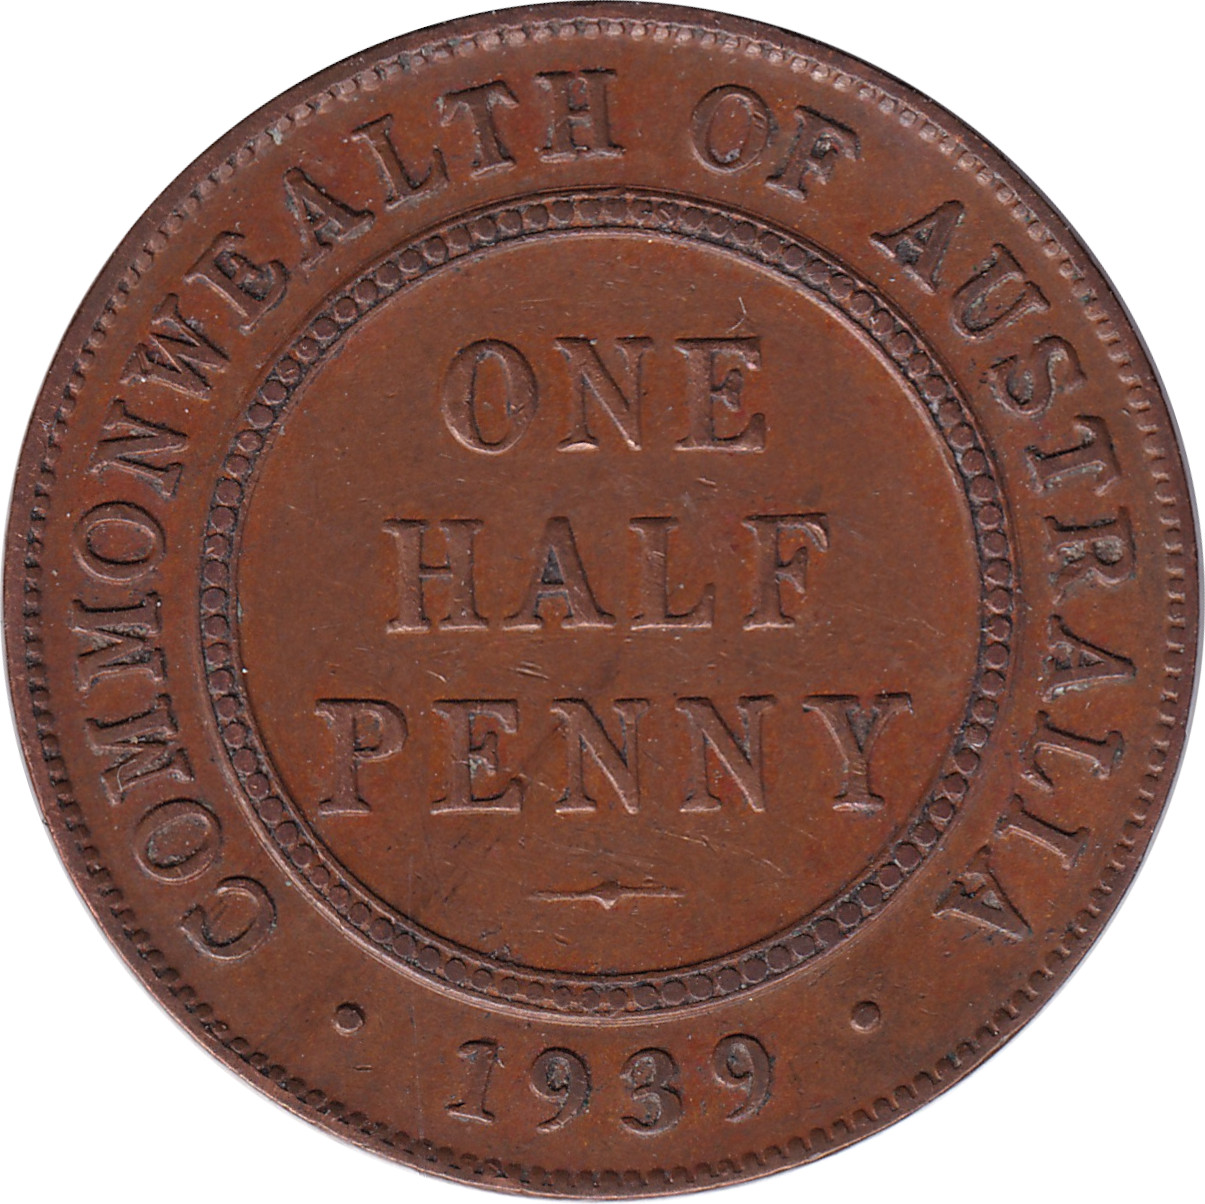 1/2 penny - Georges VI - Premier revers